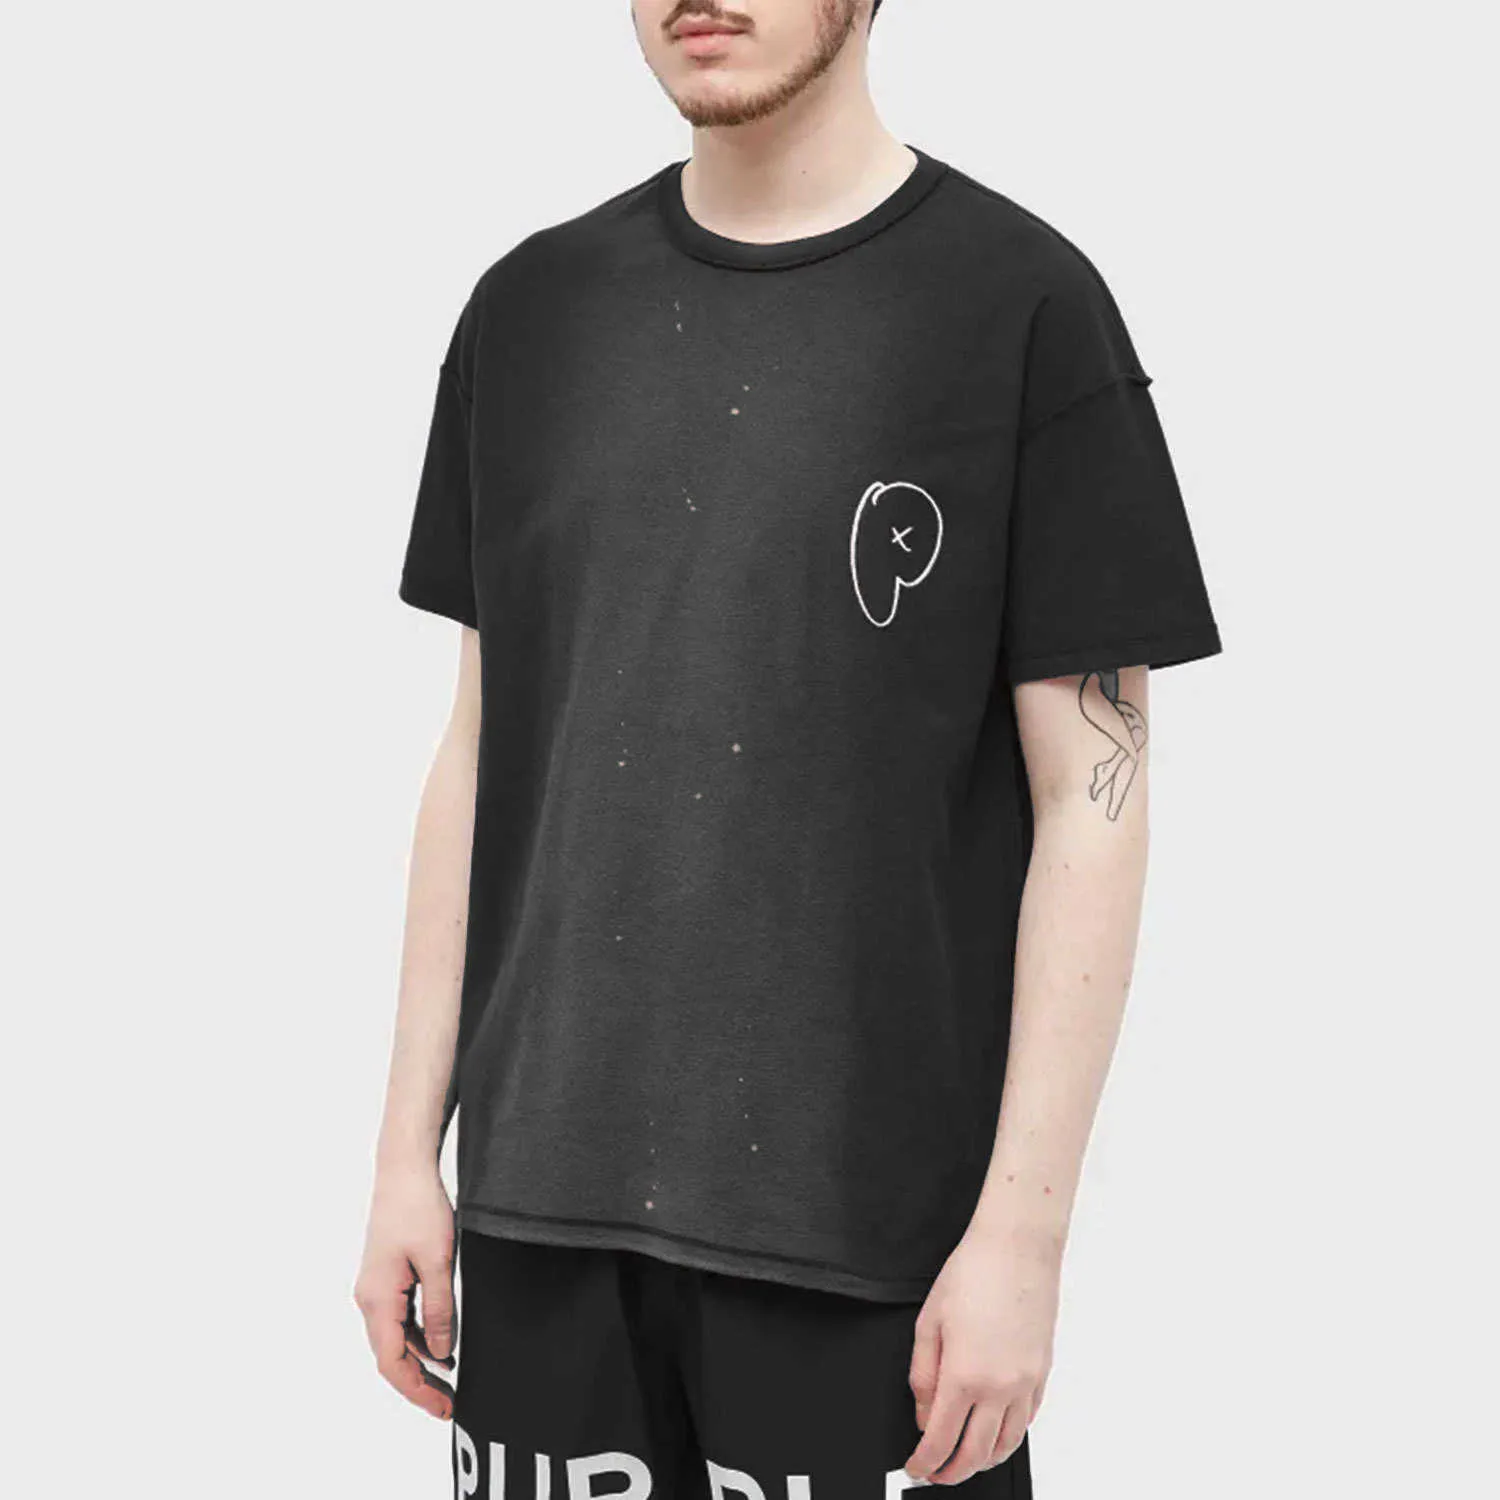 Long term trendy brand PURPLE BRAND T SHIRT short sleeved T-shirt shirtJB20